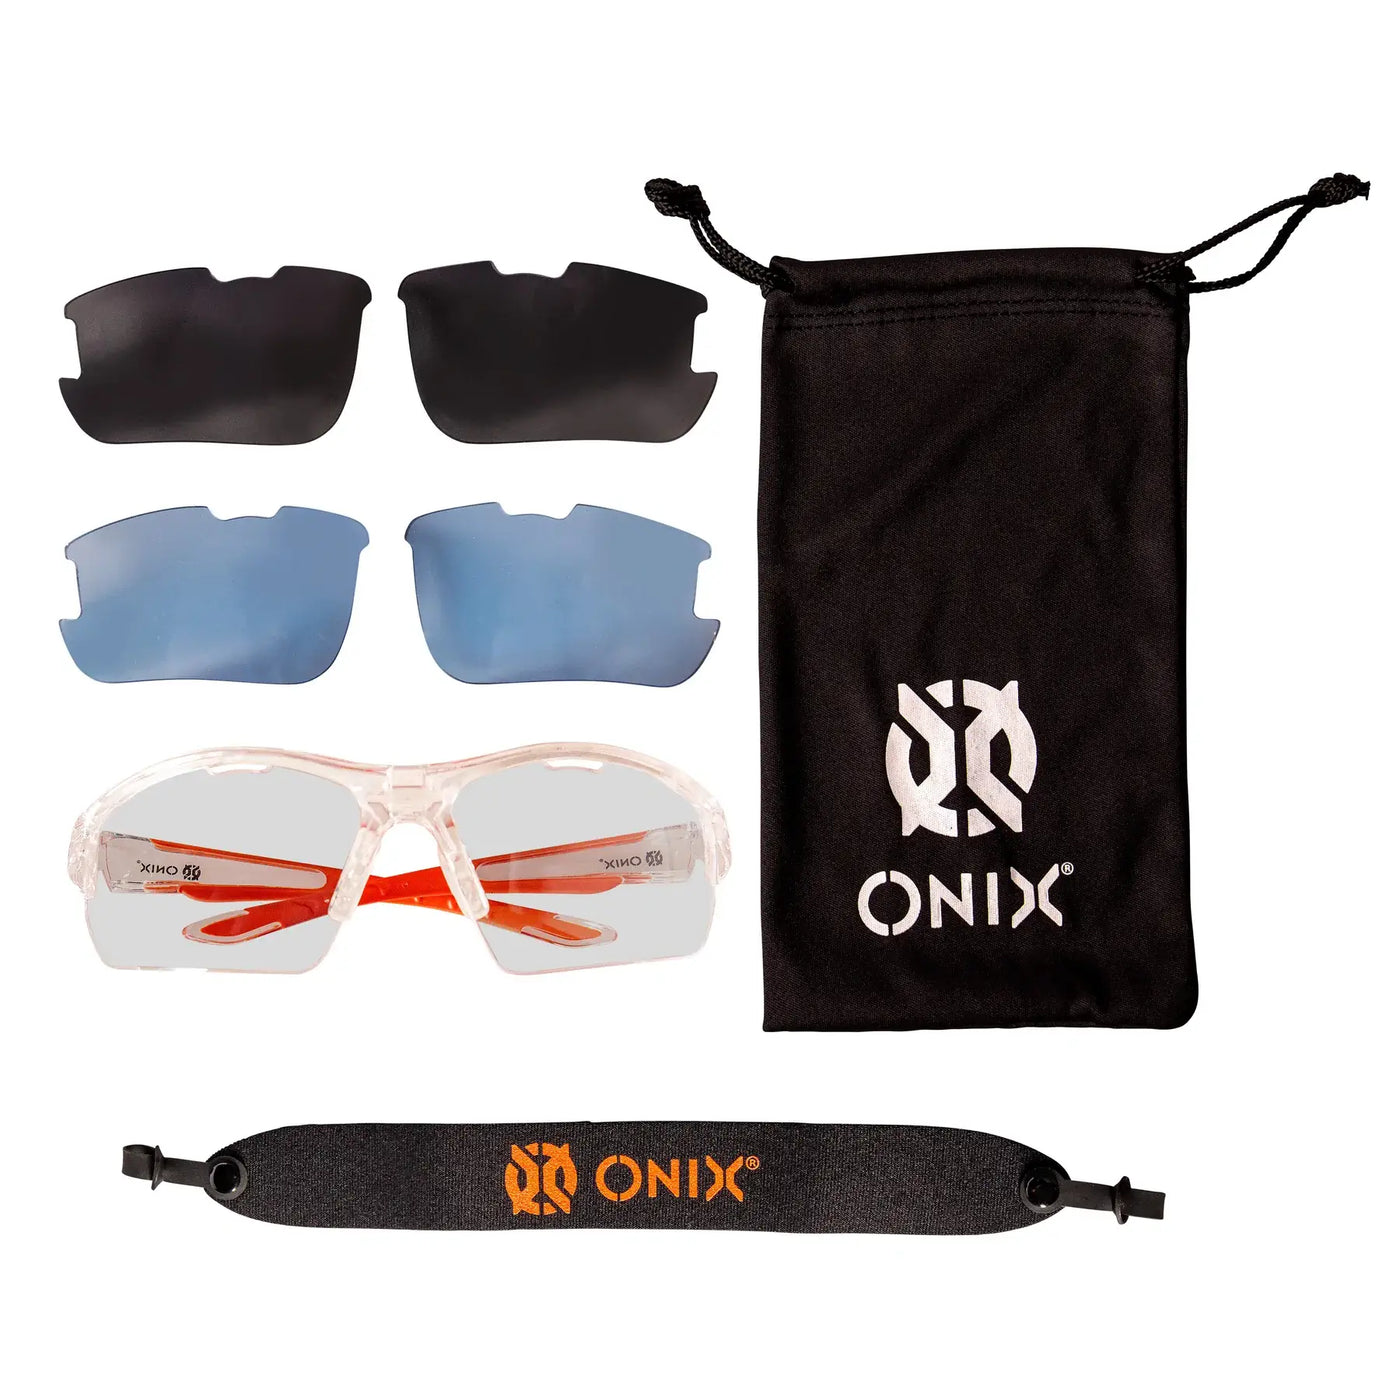 Onix Owl Protective Eyewear